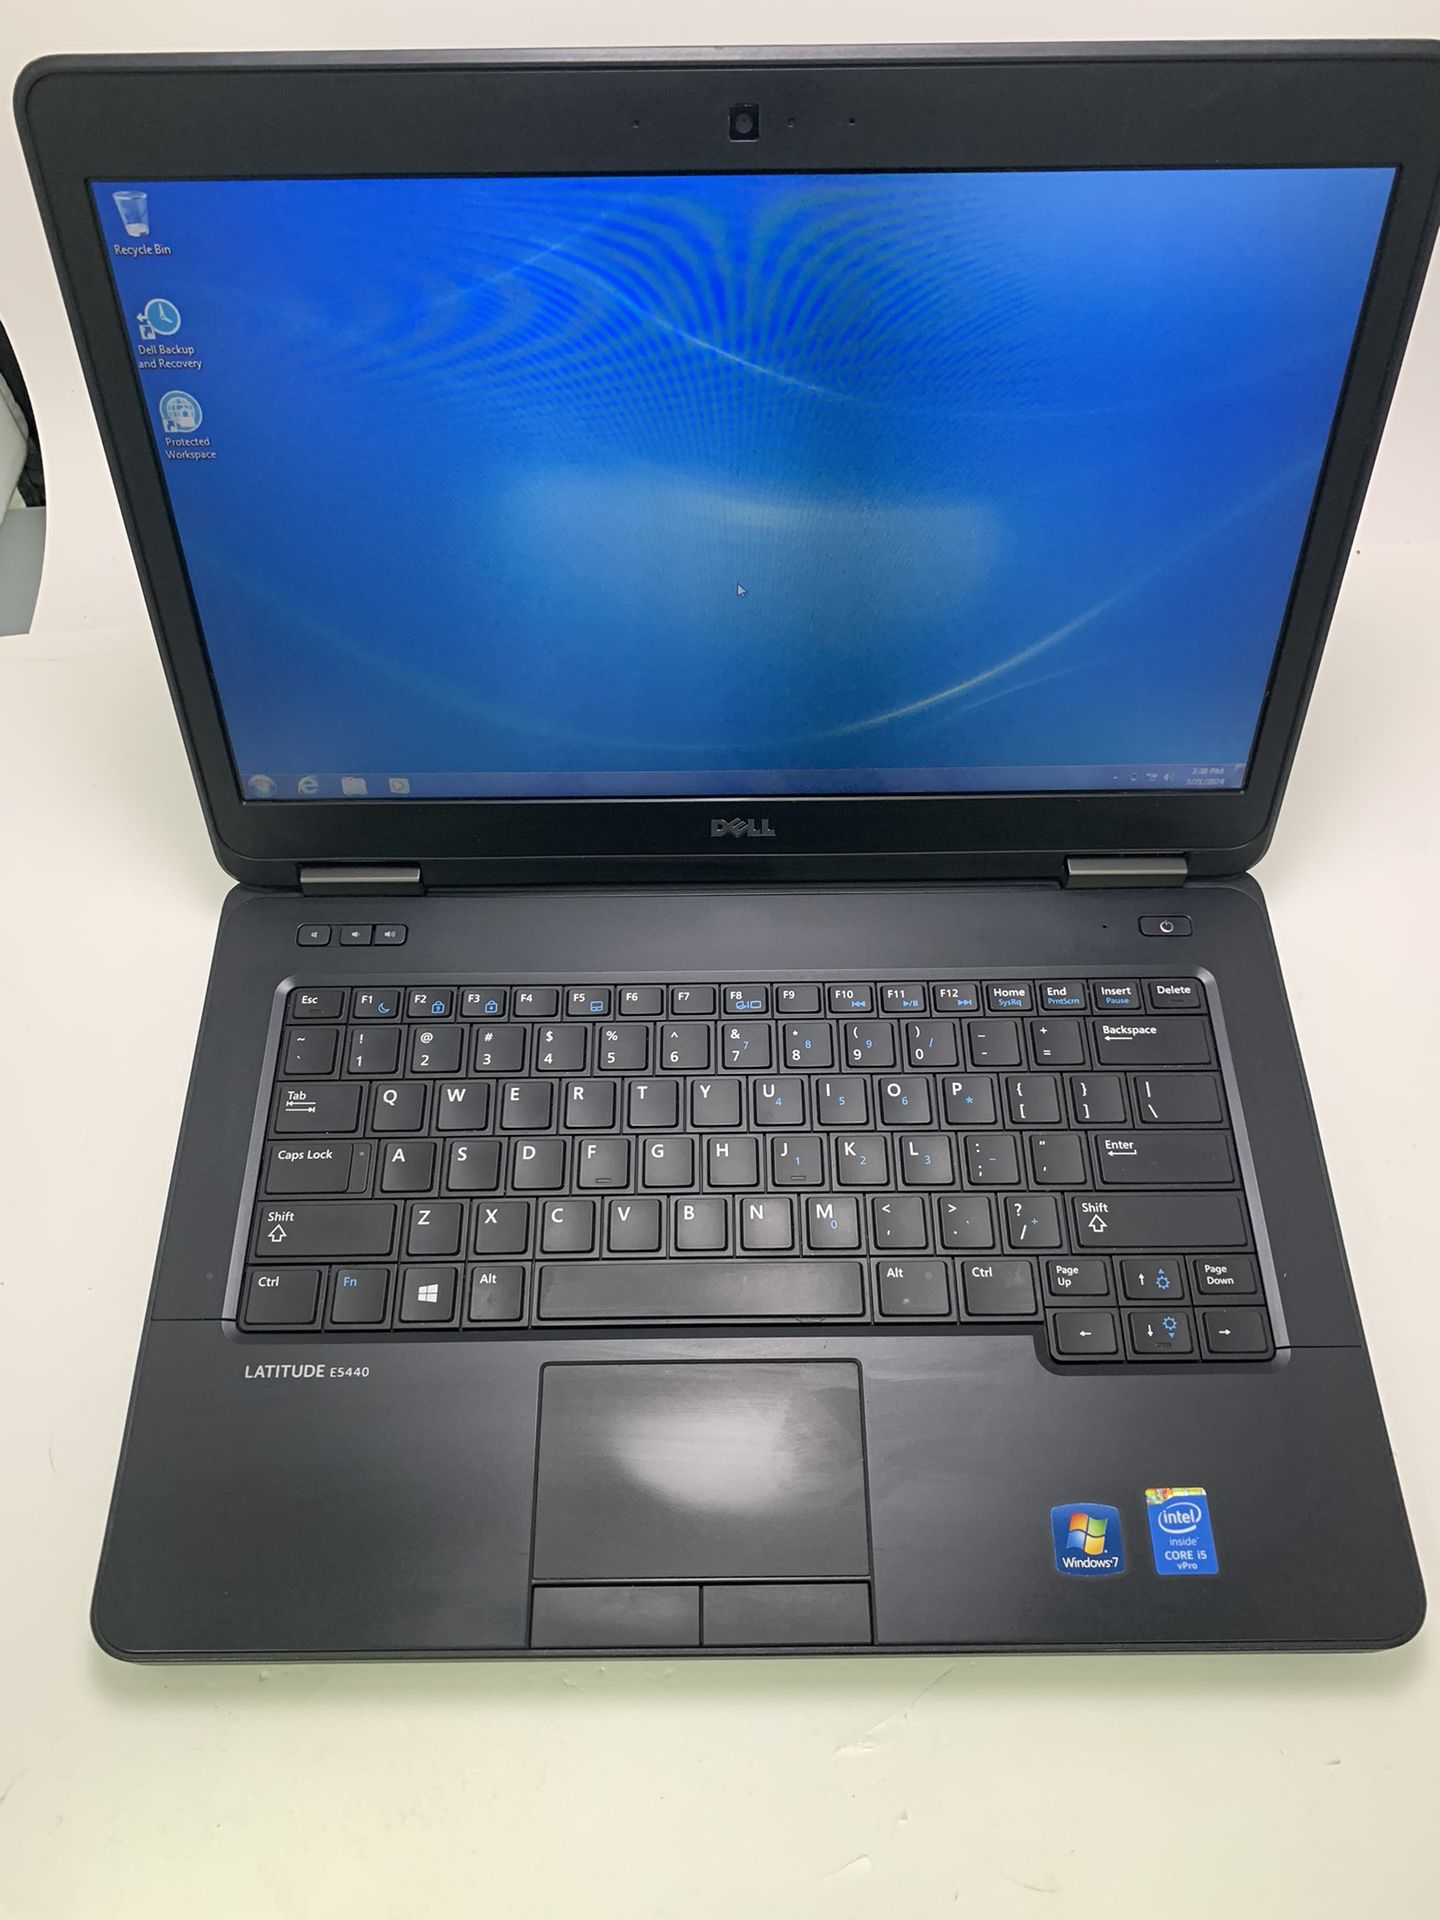 Dell Latitude E5440 Laptop Intel(R) Core i5, RAM 4GB, Storage Memory 450GB With Windows 7